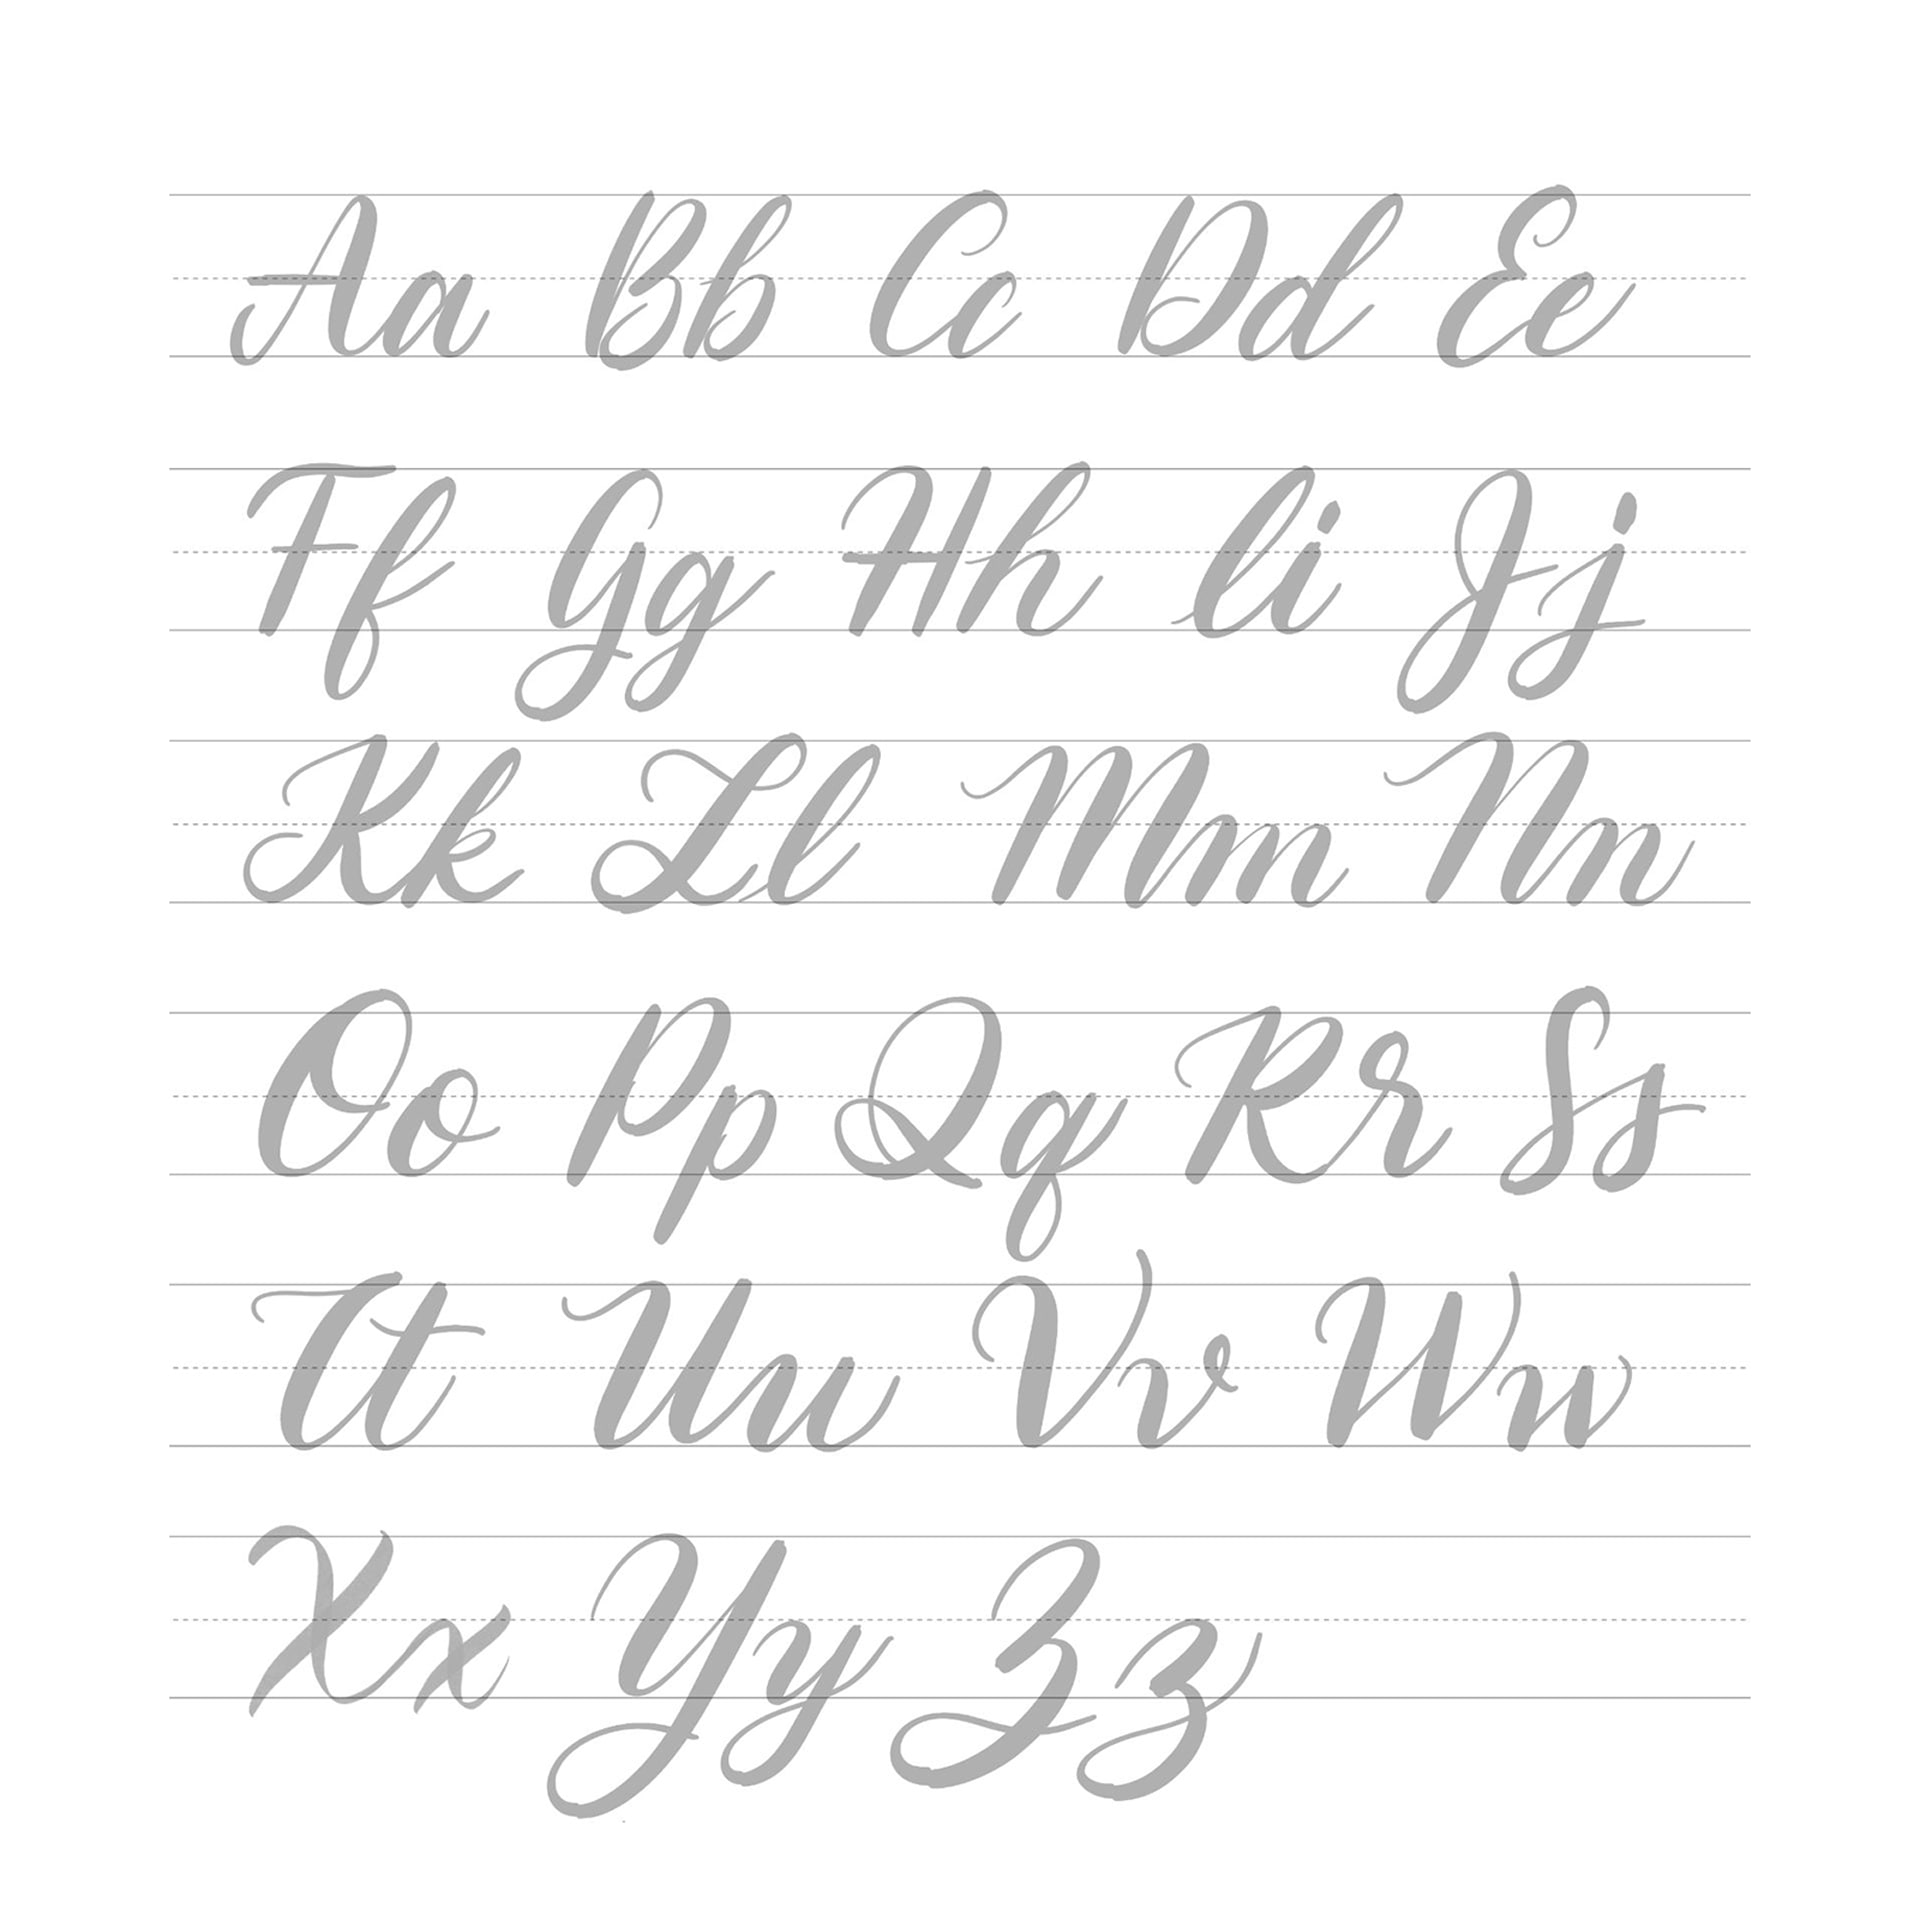 Plantillas gratis para practicar lettering